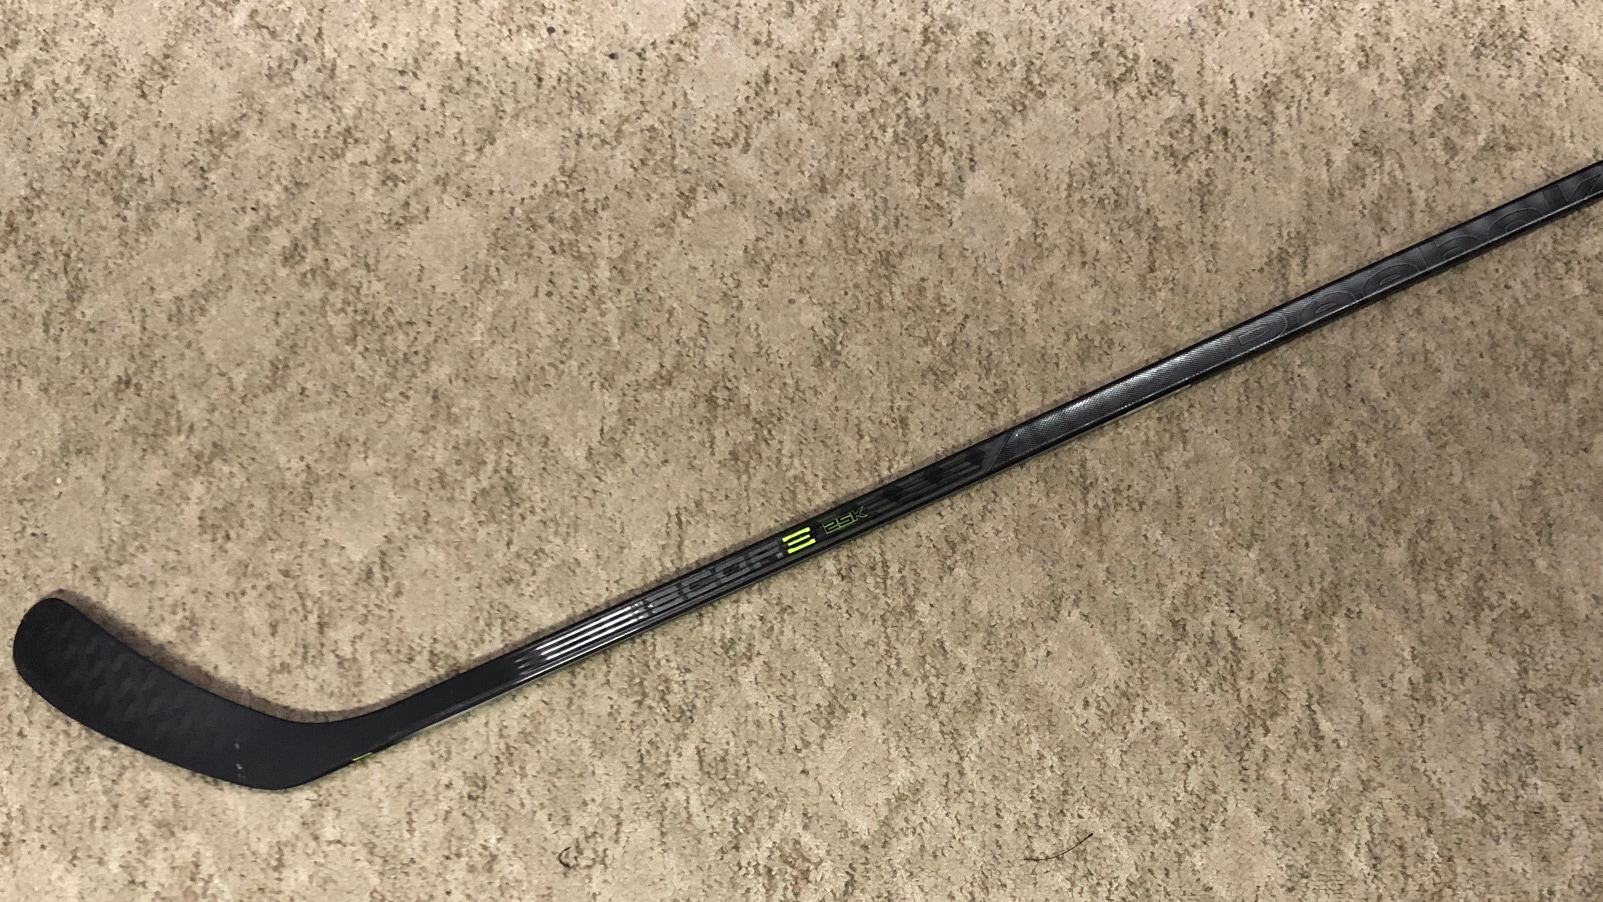 Reebok 25K Senior Hockey Stick - Crosby Pattern